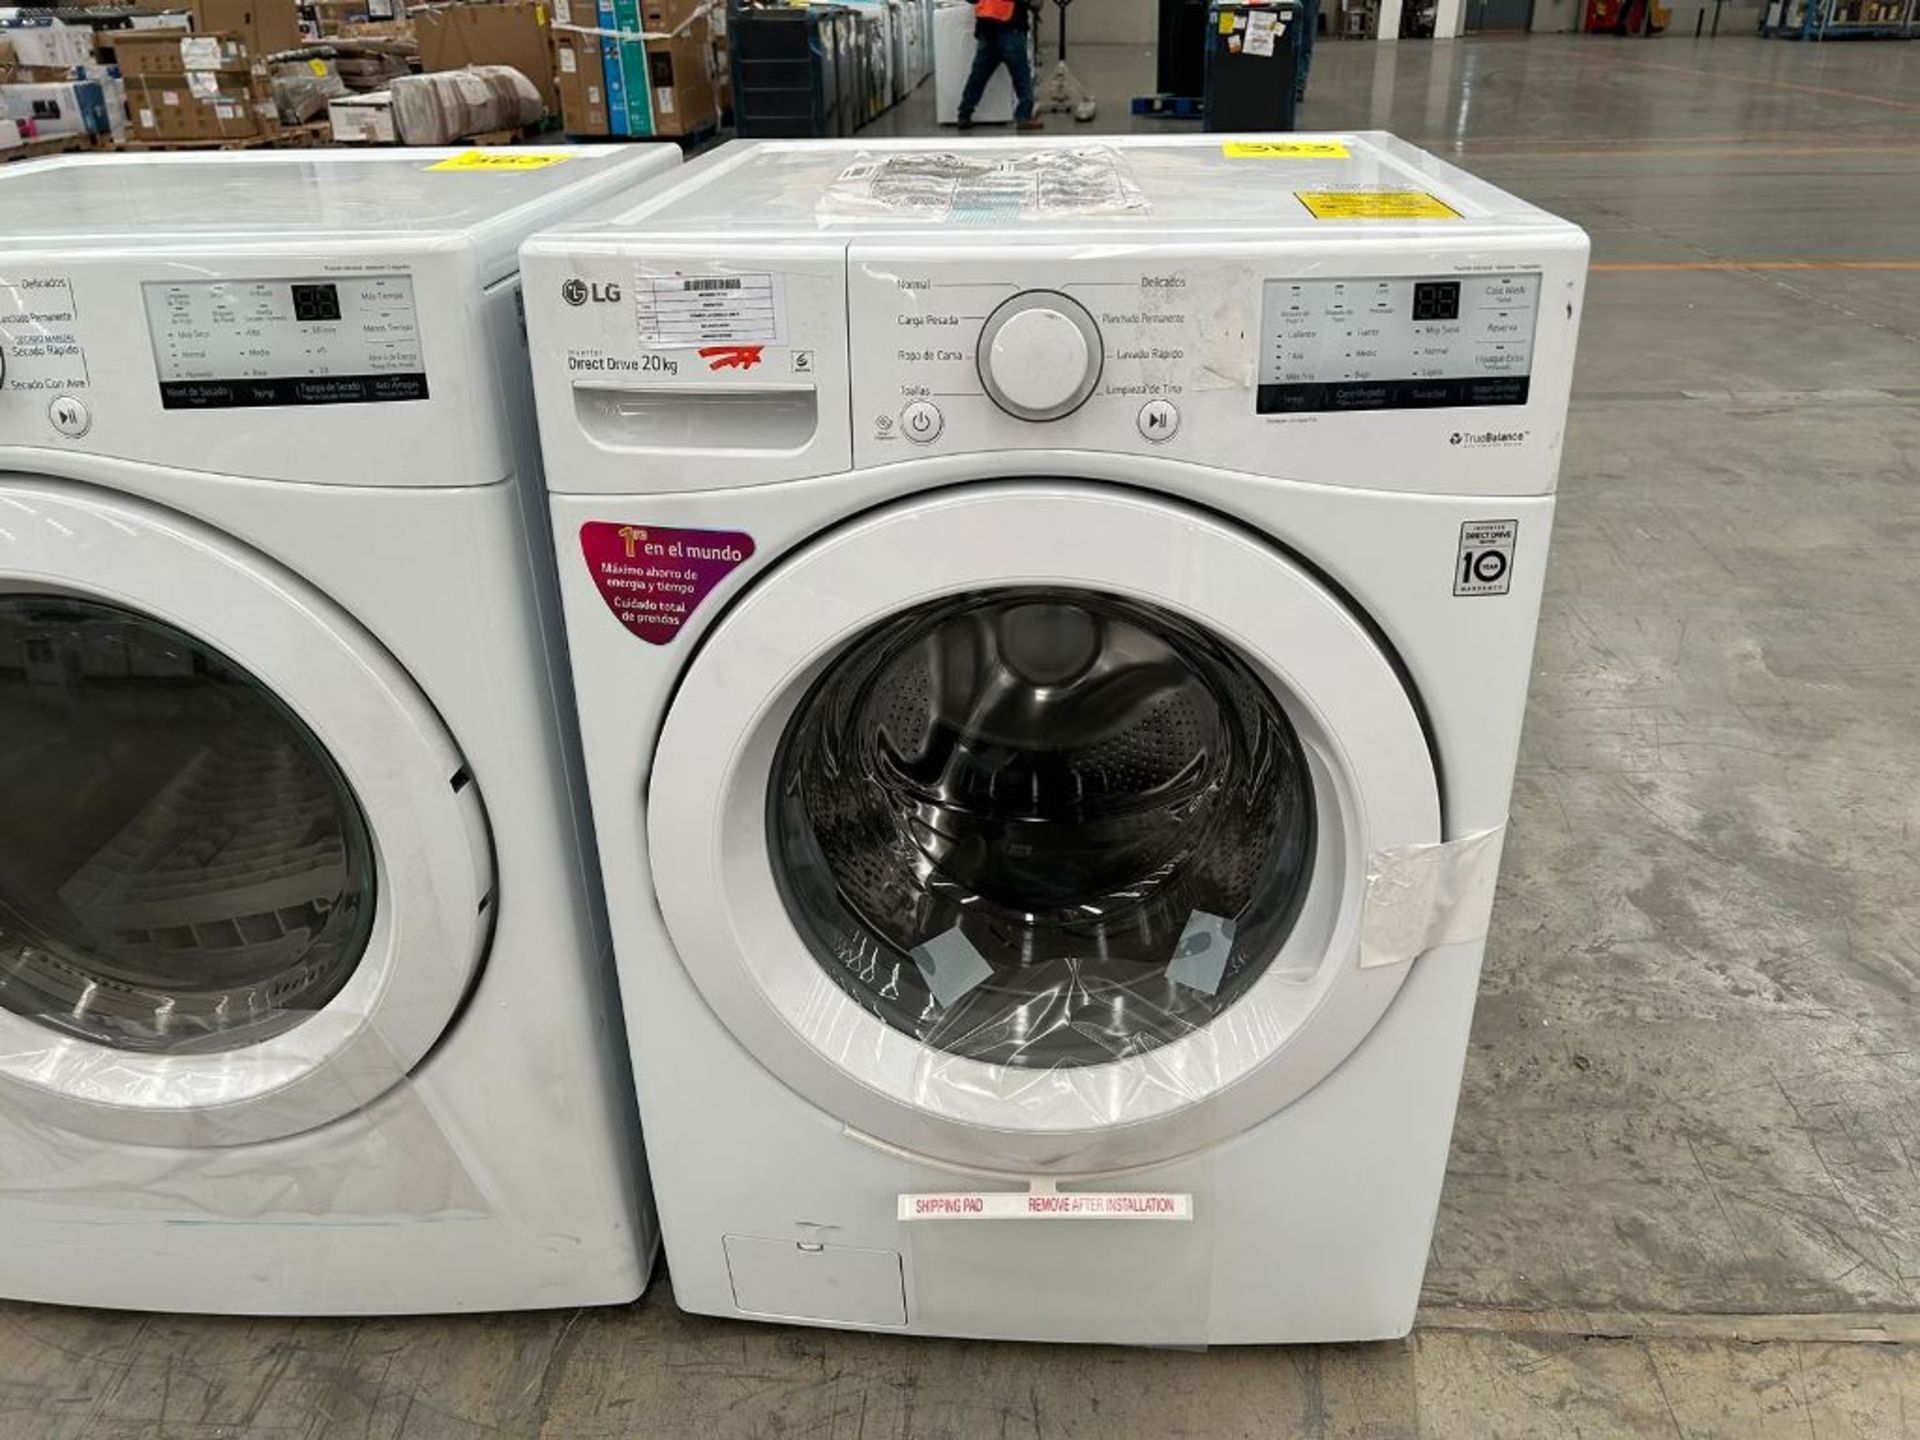 Lote de 1 Lavadora Y 1 secadora contiene: 1 lavadora de 20 Kg Marca LG, Modelo WM20WV26W, Serie k29 - Image 4 of 6